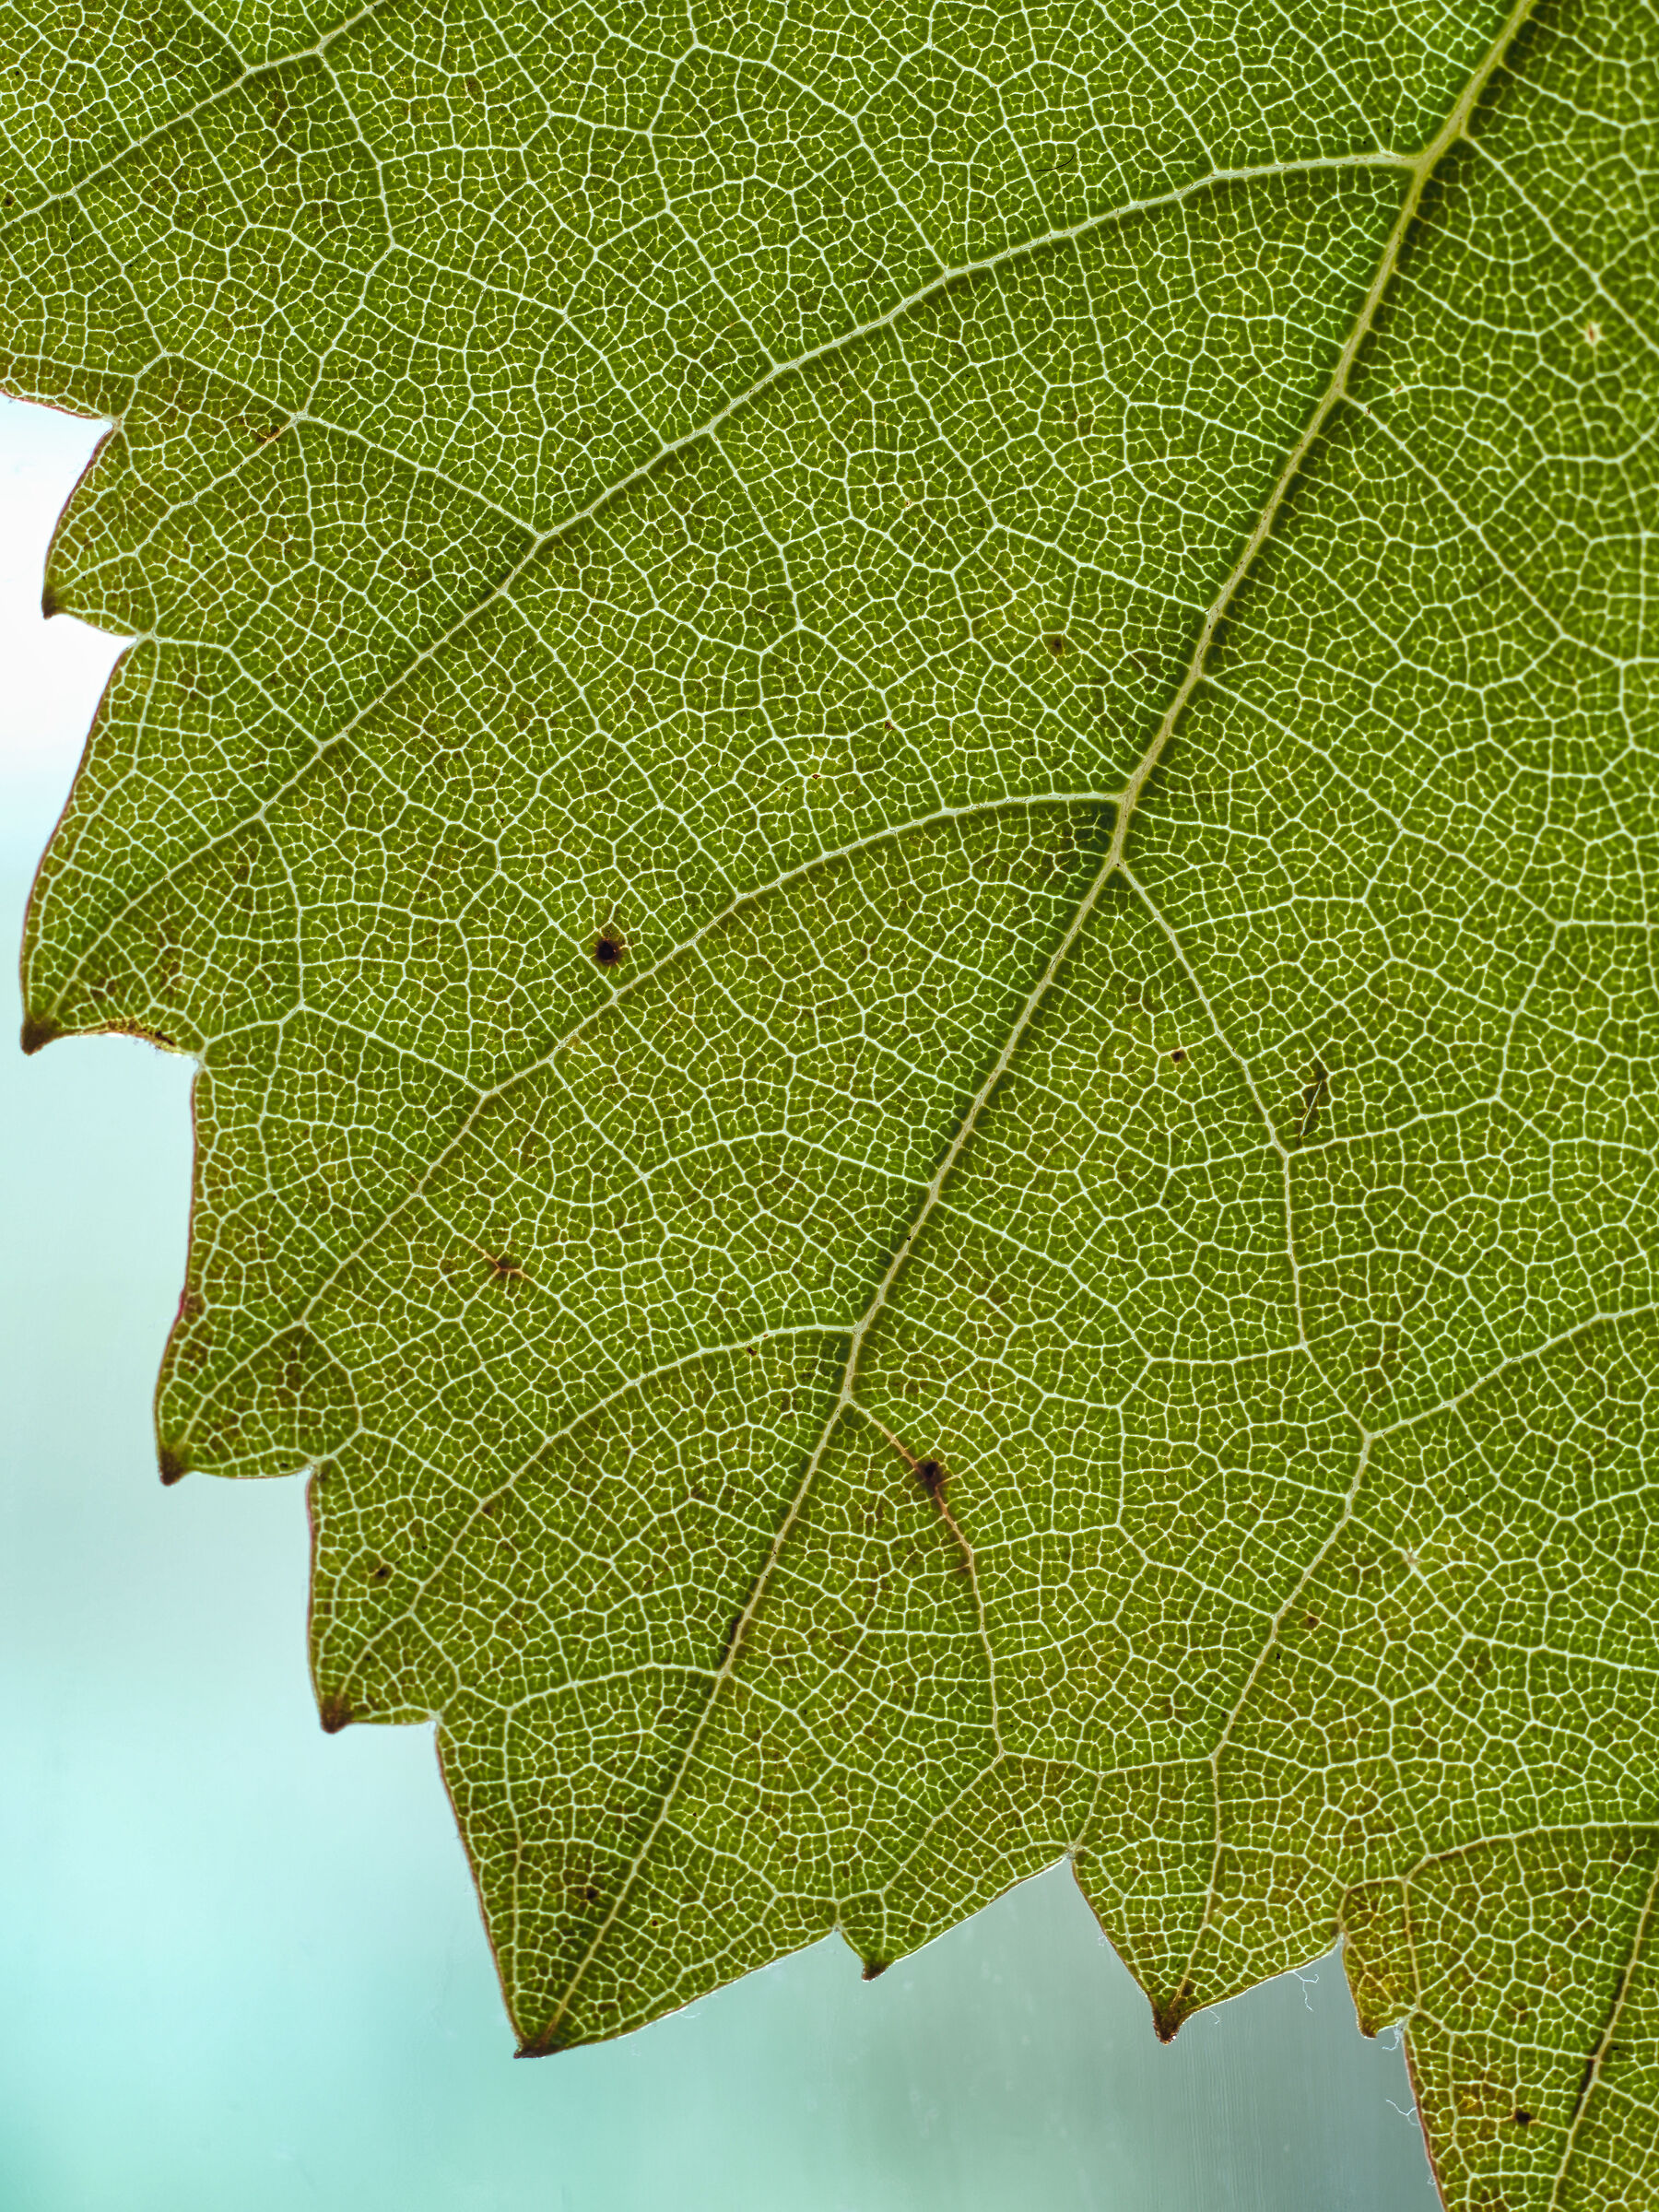 Macro vine leaf...